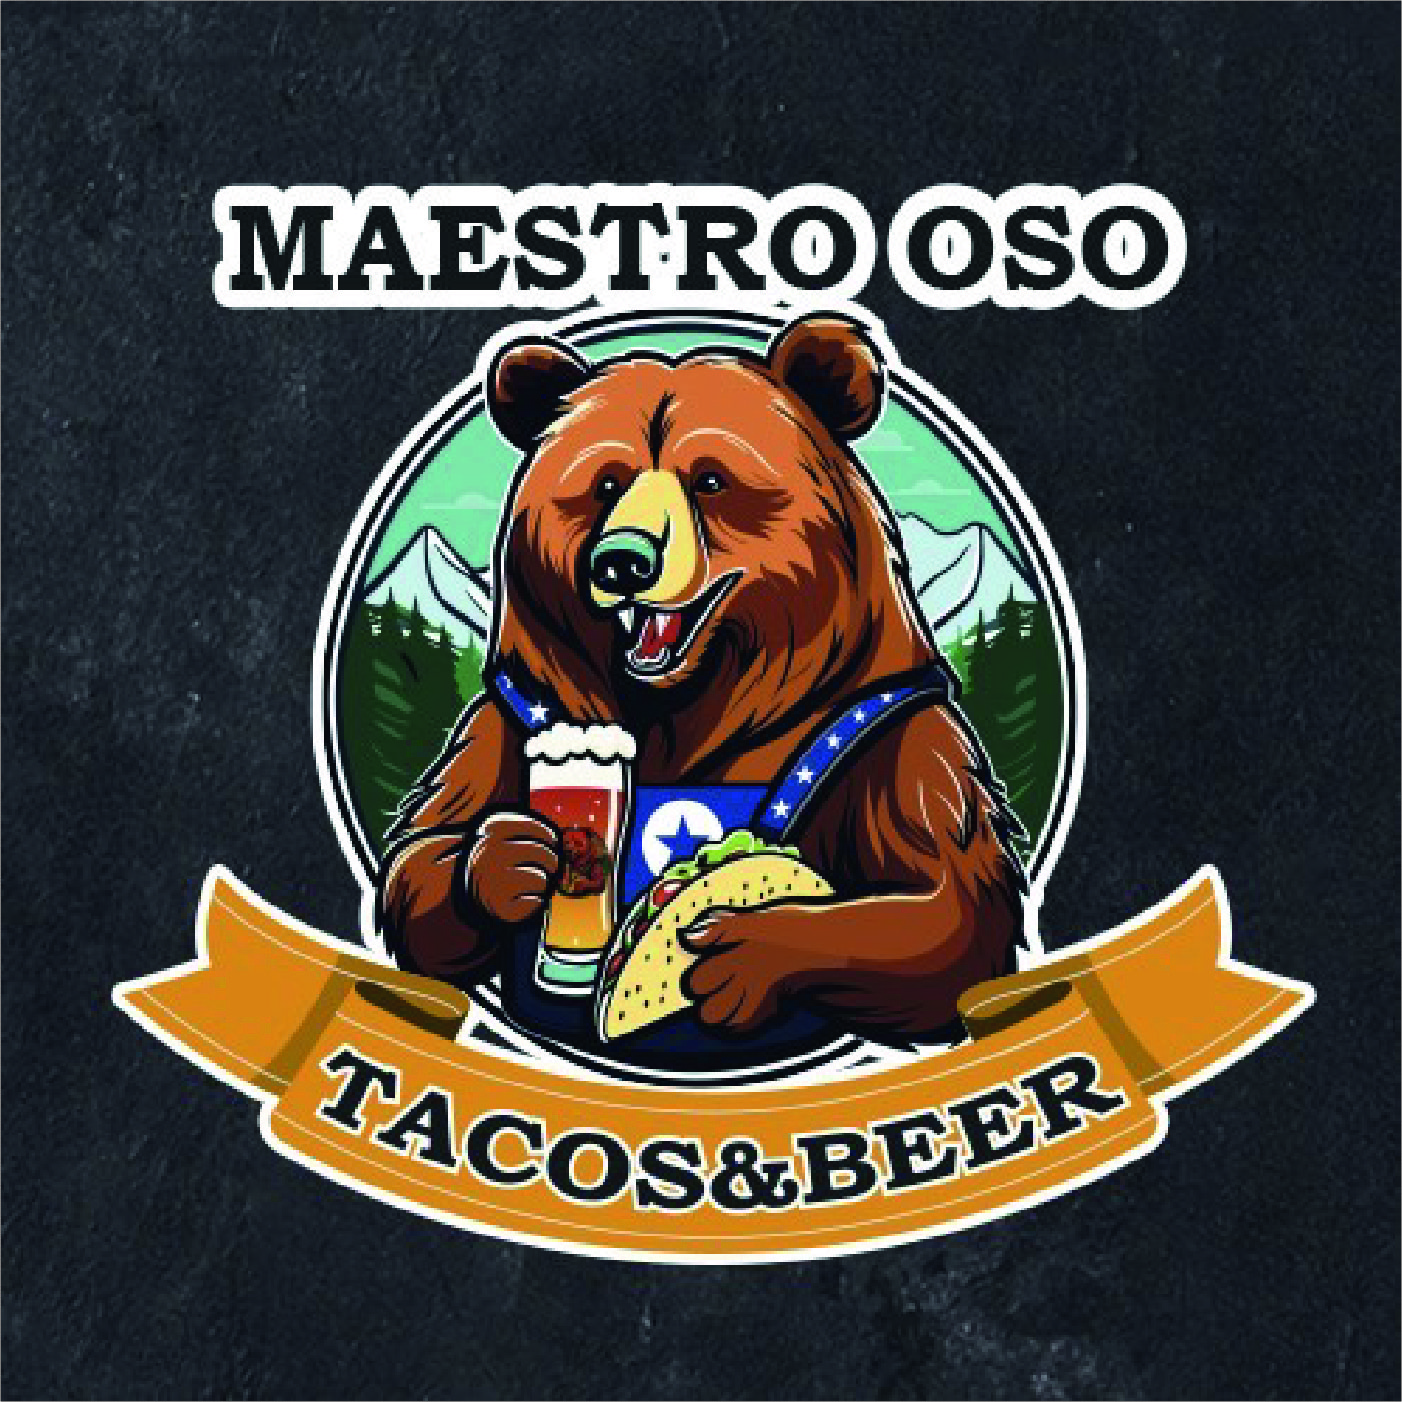 Imagen de maestro oso tacos & beer